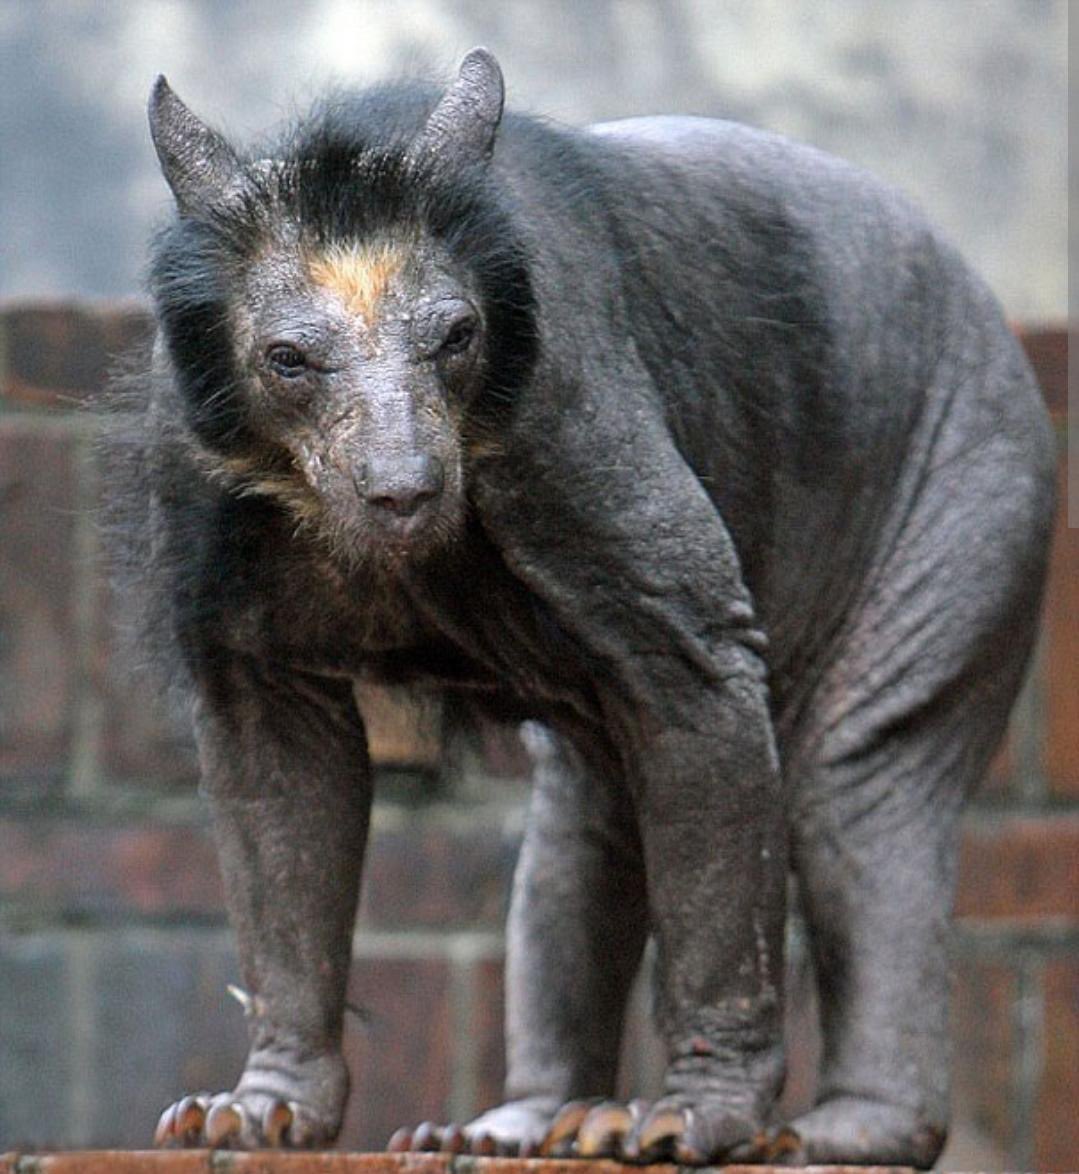 Leipzig, Almanya'da bulunan bir hayvanat bahçesinde yaşayan tüysüz ayı 'dolores'.